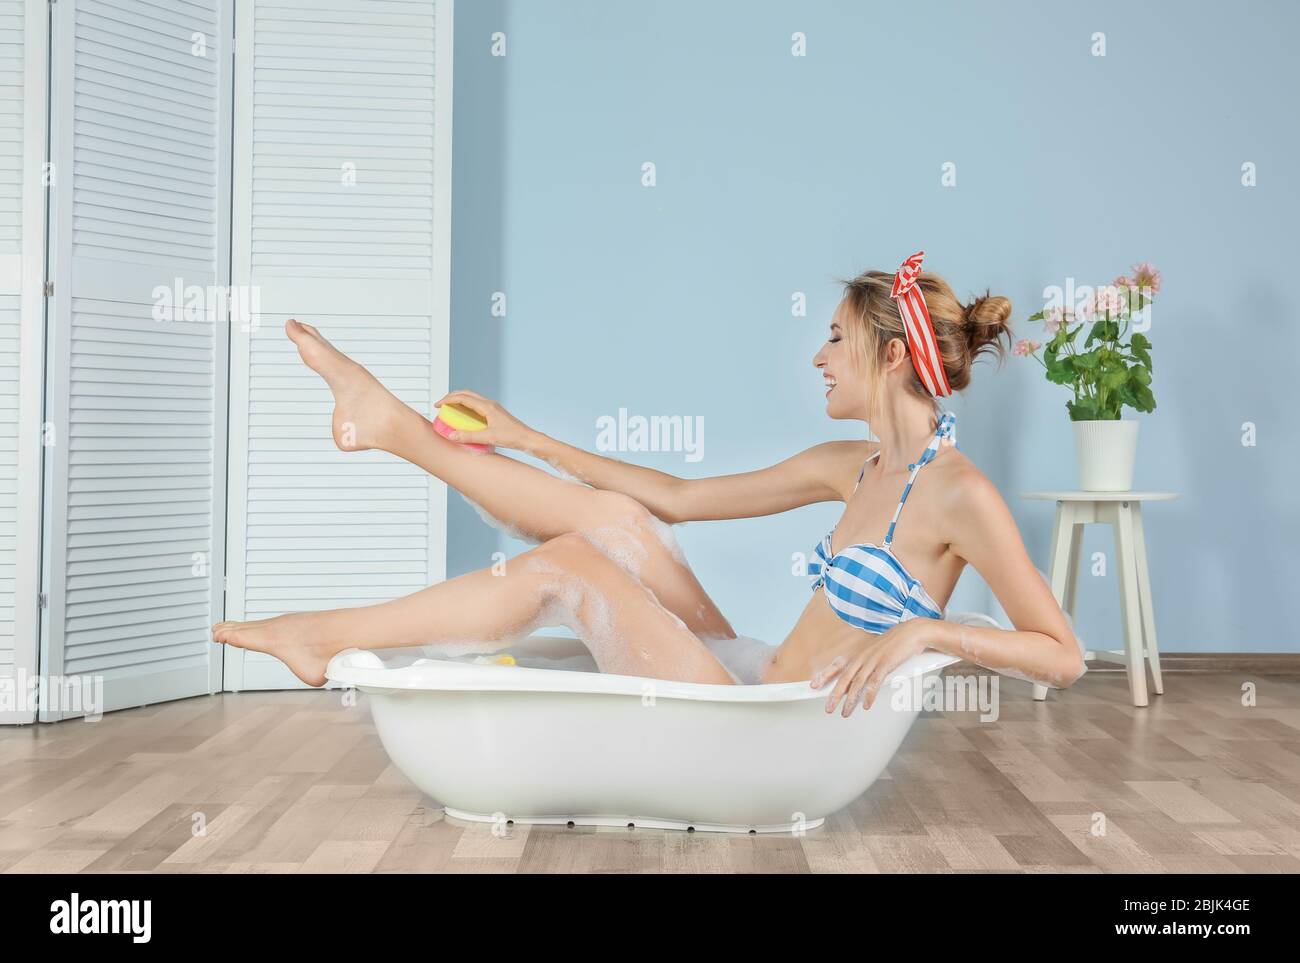 Funny young woman in bikini taking bath at home Stock Photo